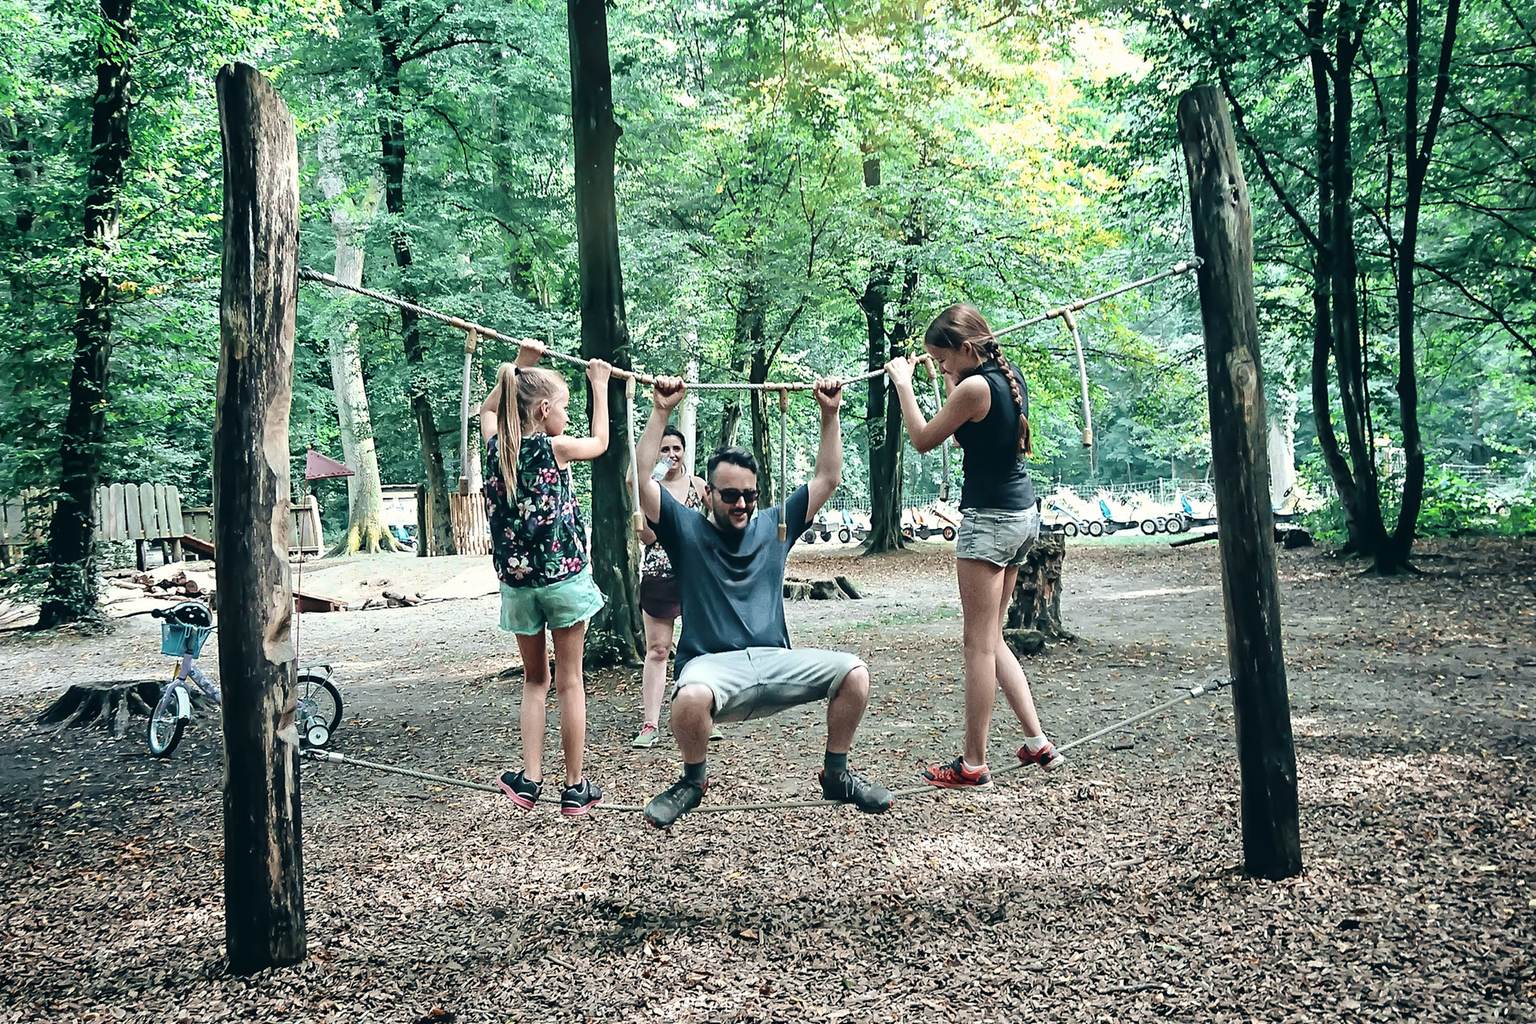 Ein Vater balanciert zusammen mit seinen zwei Töchter auf einem Seil auf einem Outdoor-Spielplatz.